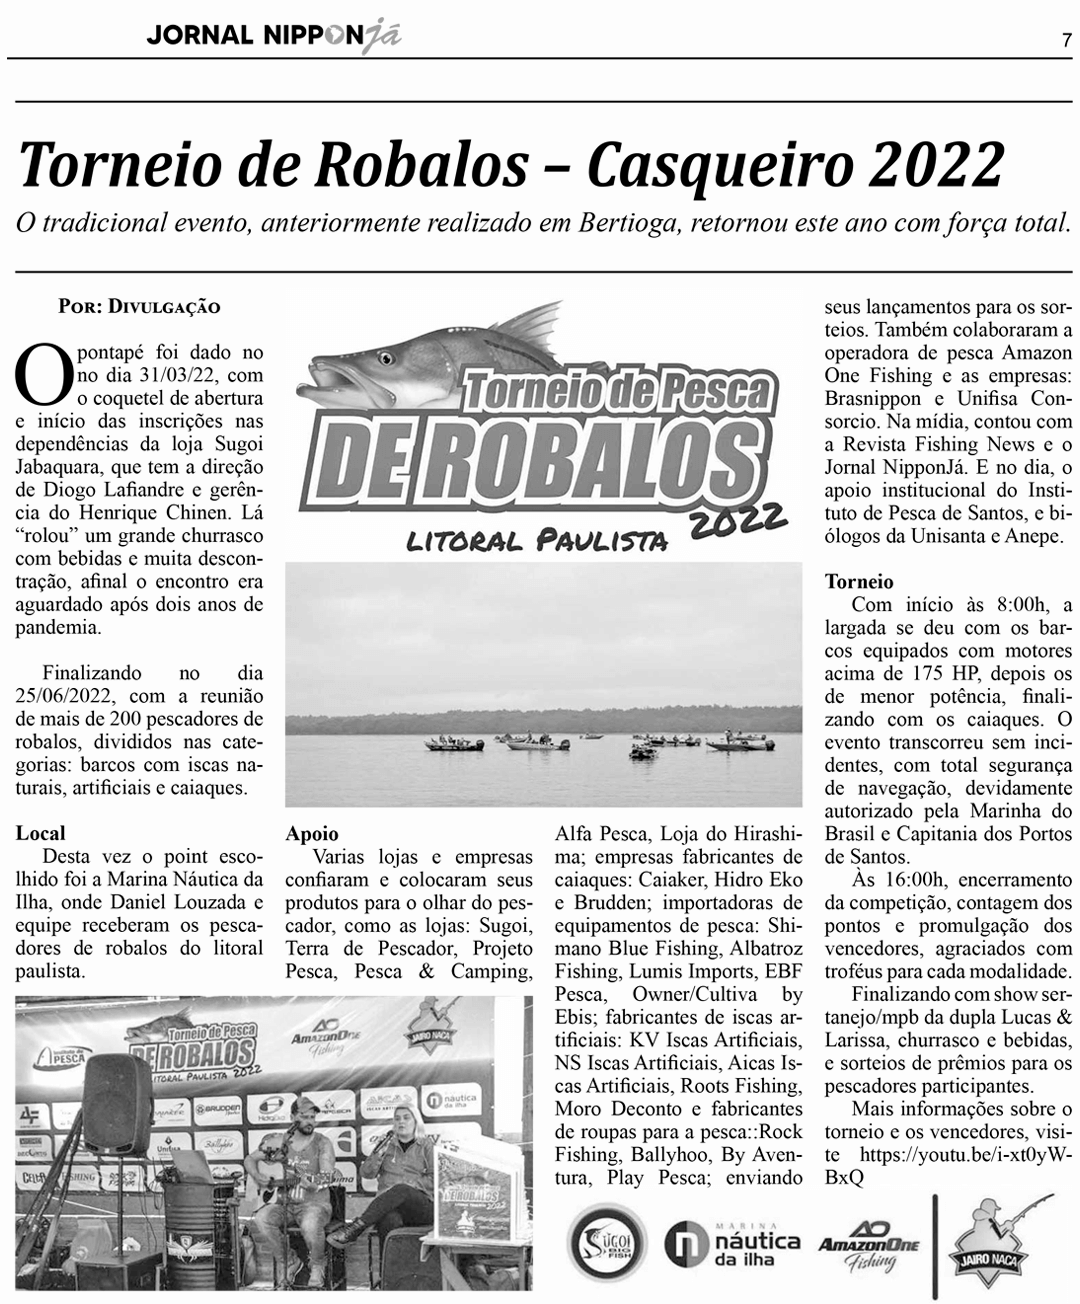 Torneio de Pesca de Robalos – 2022